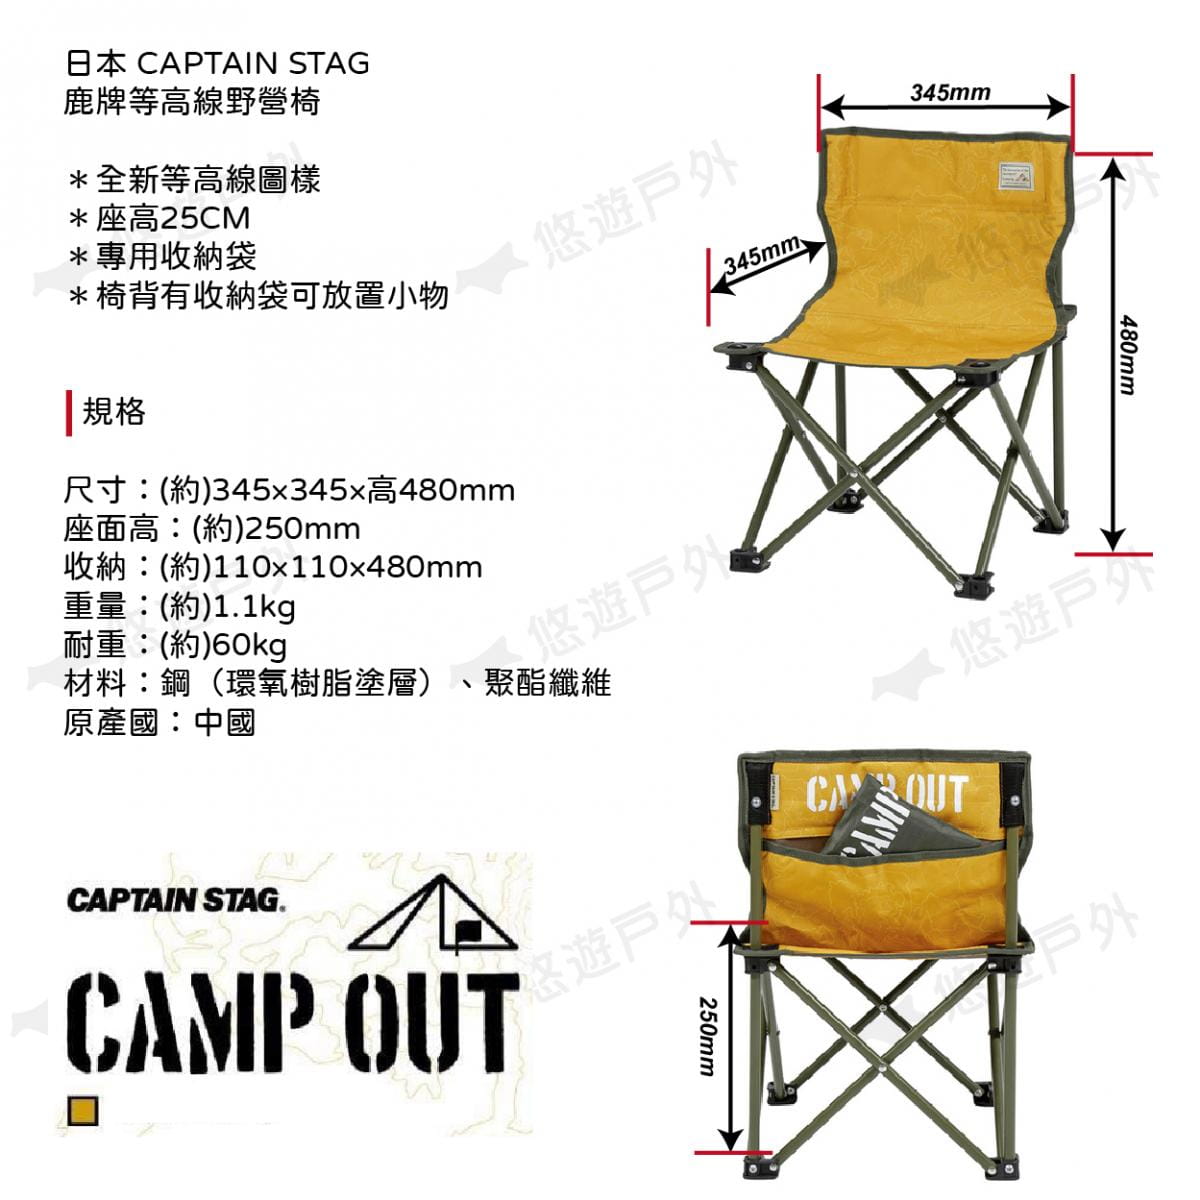 【日本鹿牌】等高線野營椅 UC-1806 露營椅 休閒椅 摺疊椅 便攜椅 單人椅 釣魚 居家 露營 3